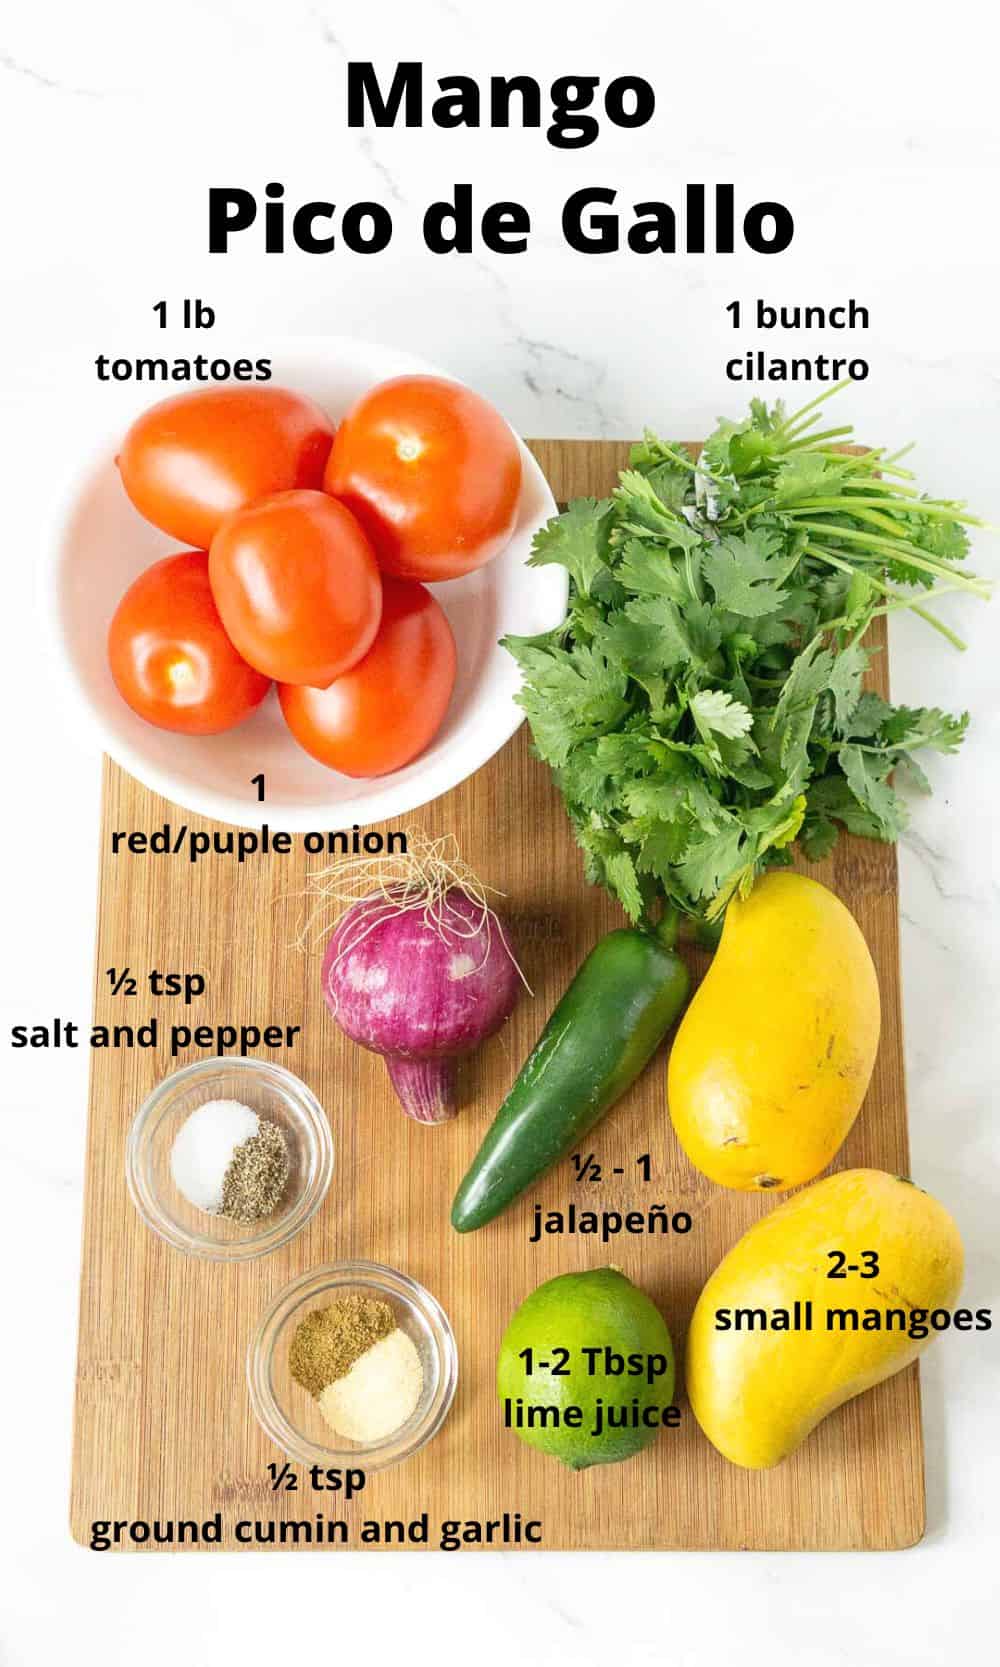 Ingredients for mango pico de gallo